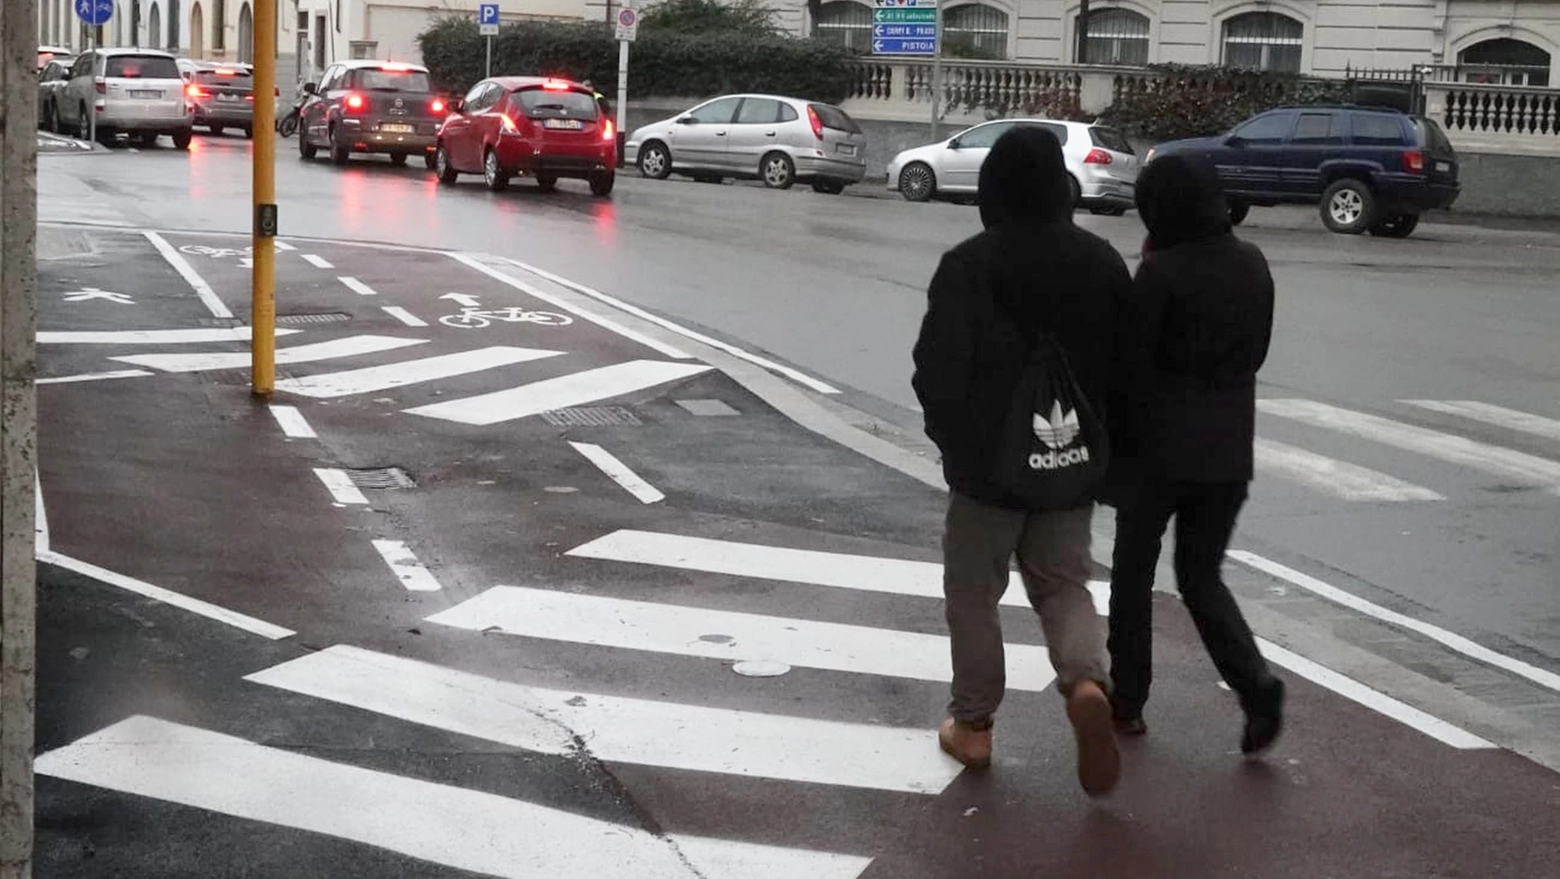 Incidenti, pedoni morti sulle strade: ecco quanti in Emilia Romagna